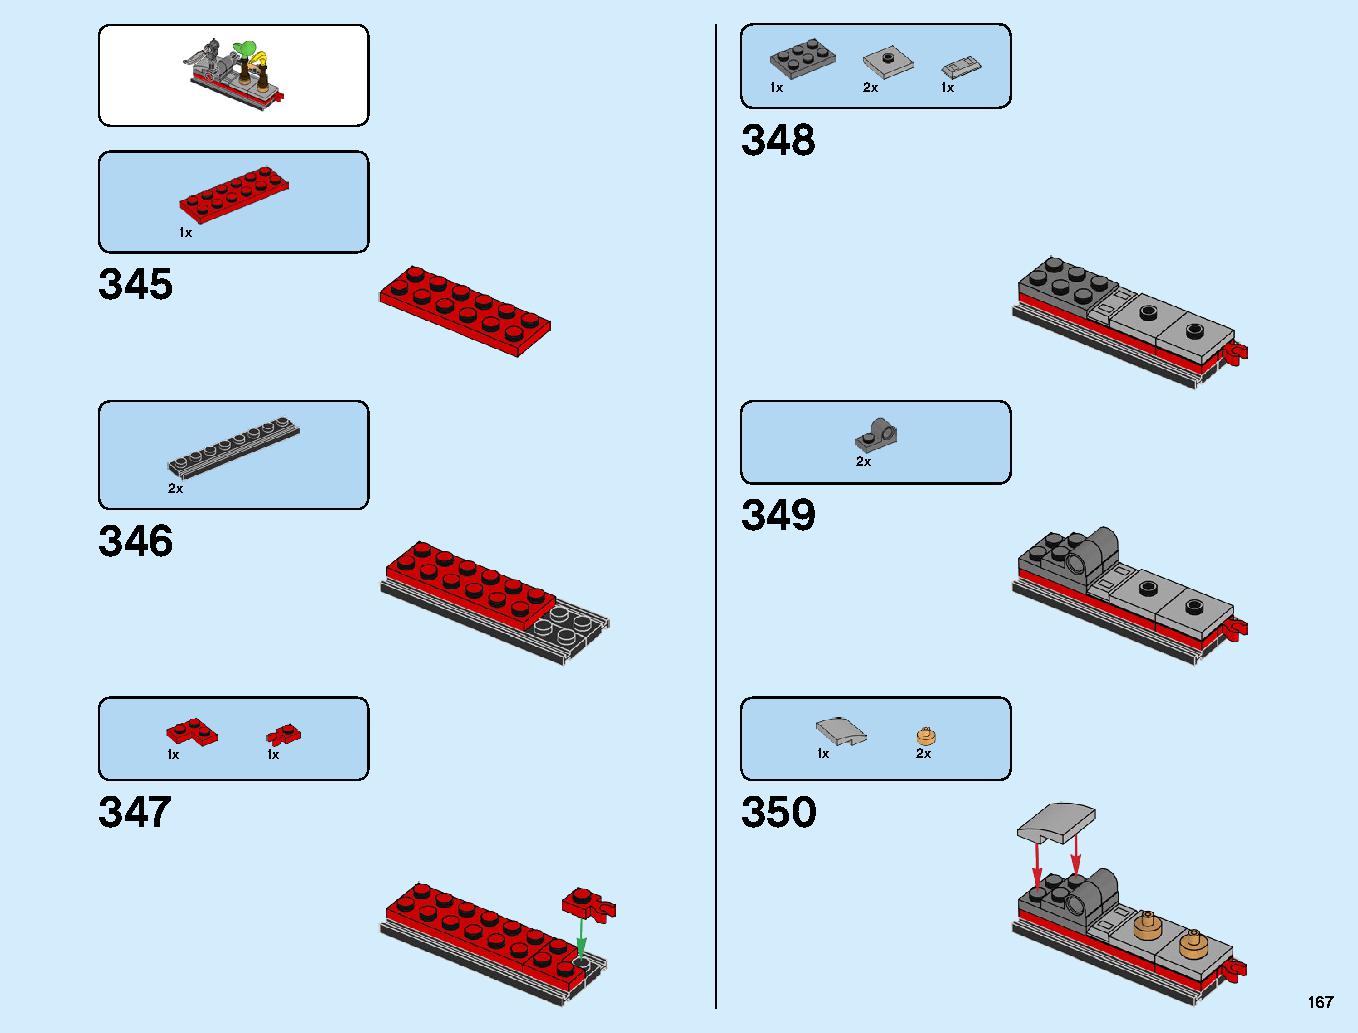 ニンジャ道場 70670 レゴの商品情報 レゴの説明書・組立方法 167 page